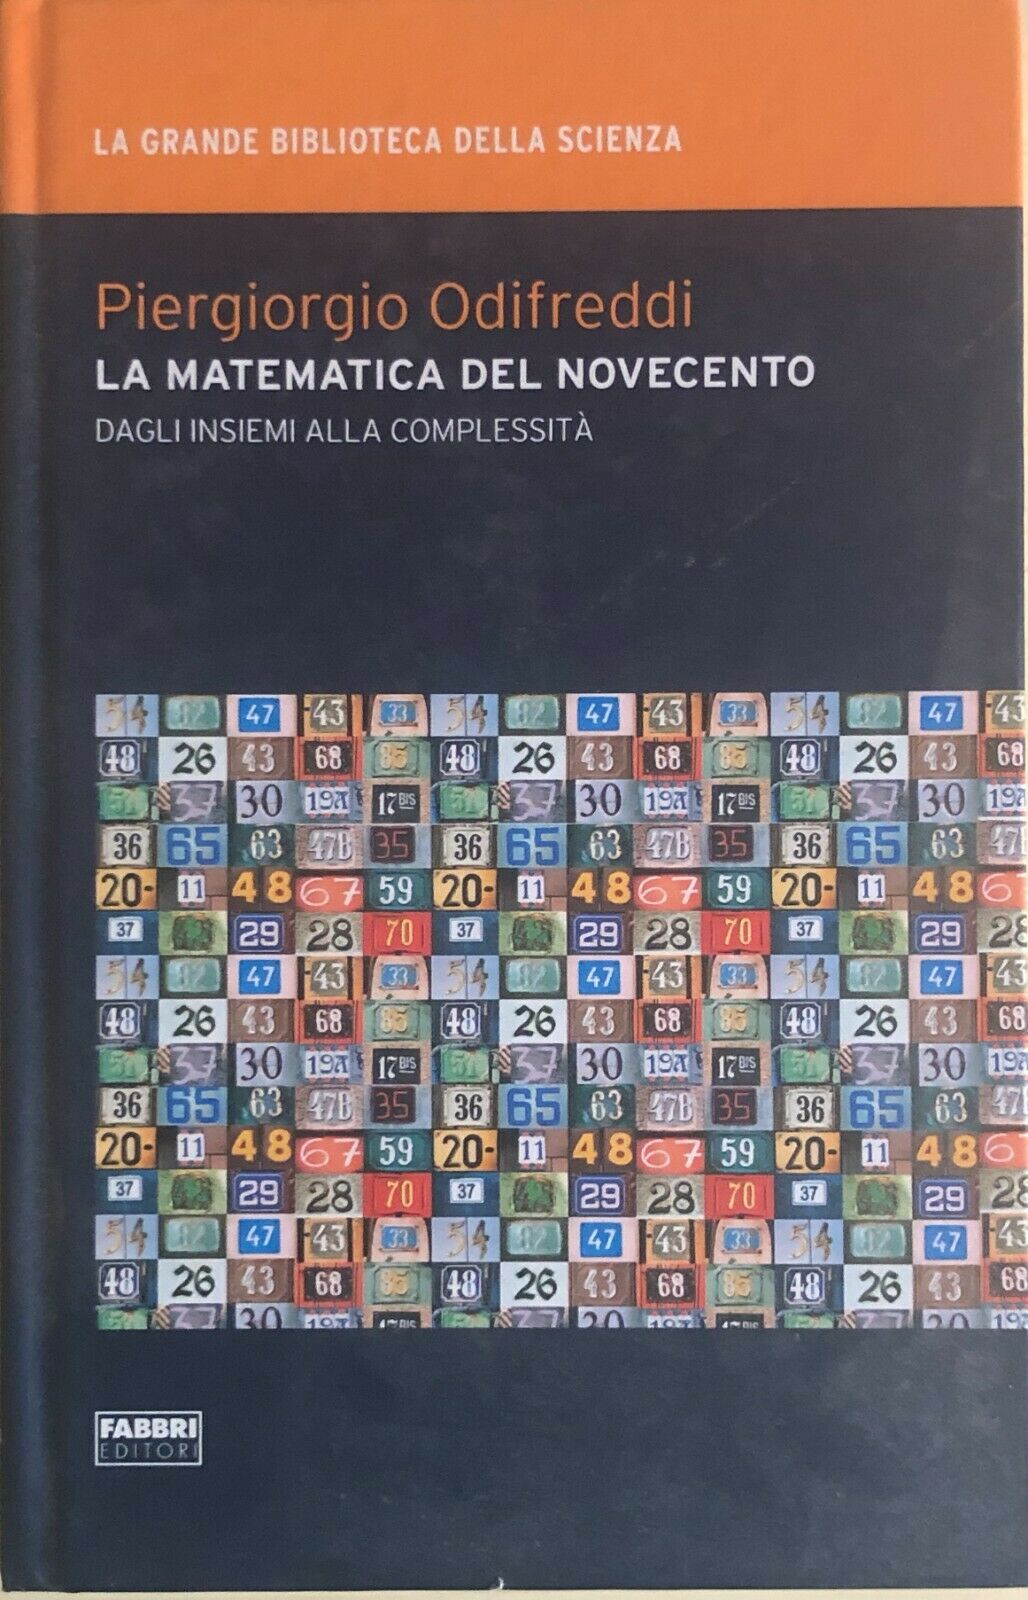 La matematica del novecento di Piergiorgio Odifreddi, 2009, Fabbri editori